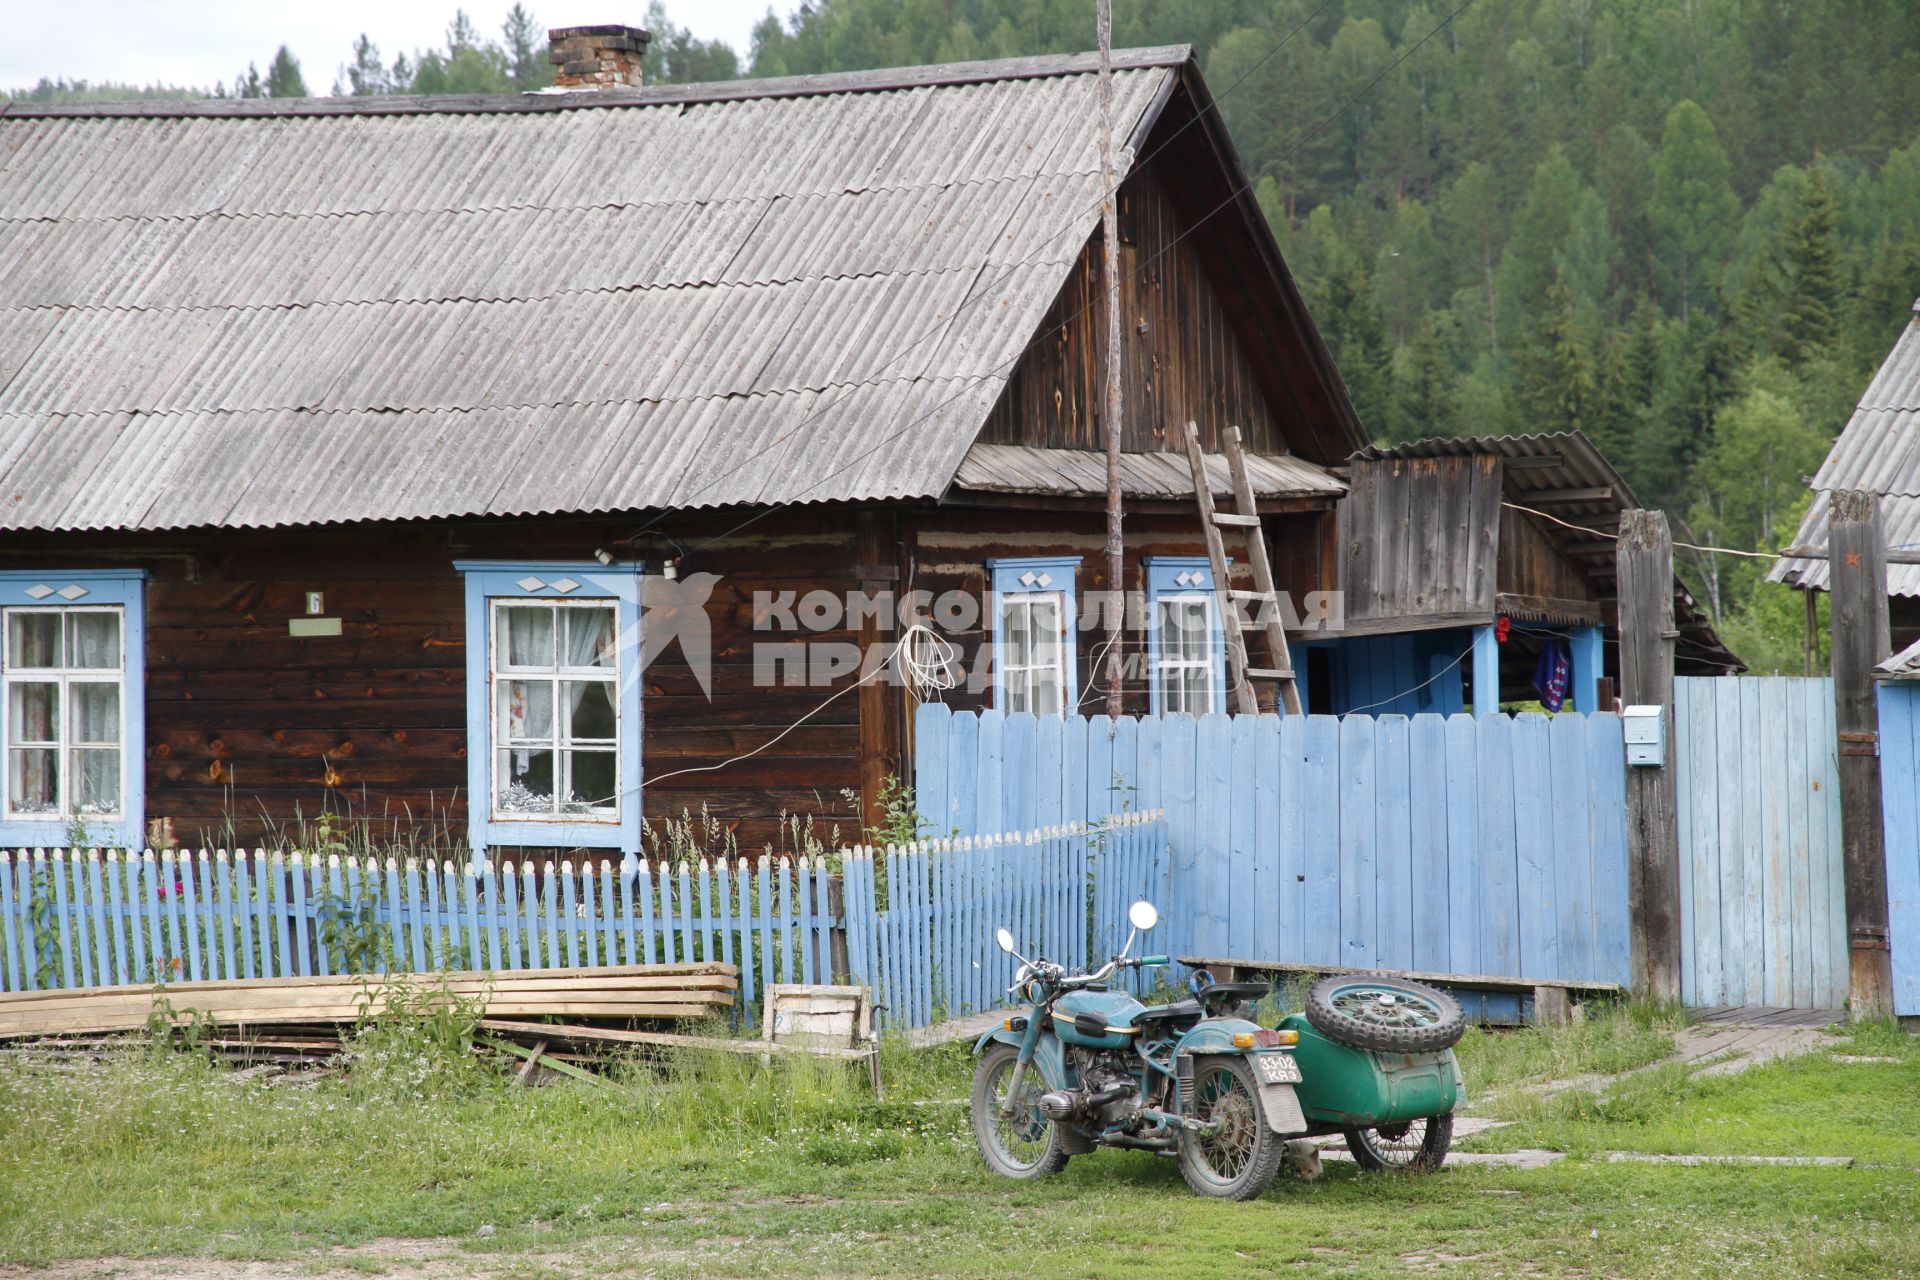 Деревенский дом, рядом стоит мотоцикл с коляской.